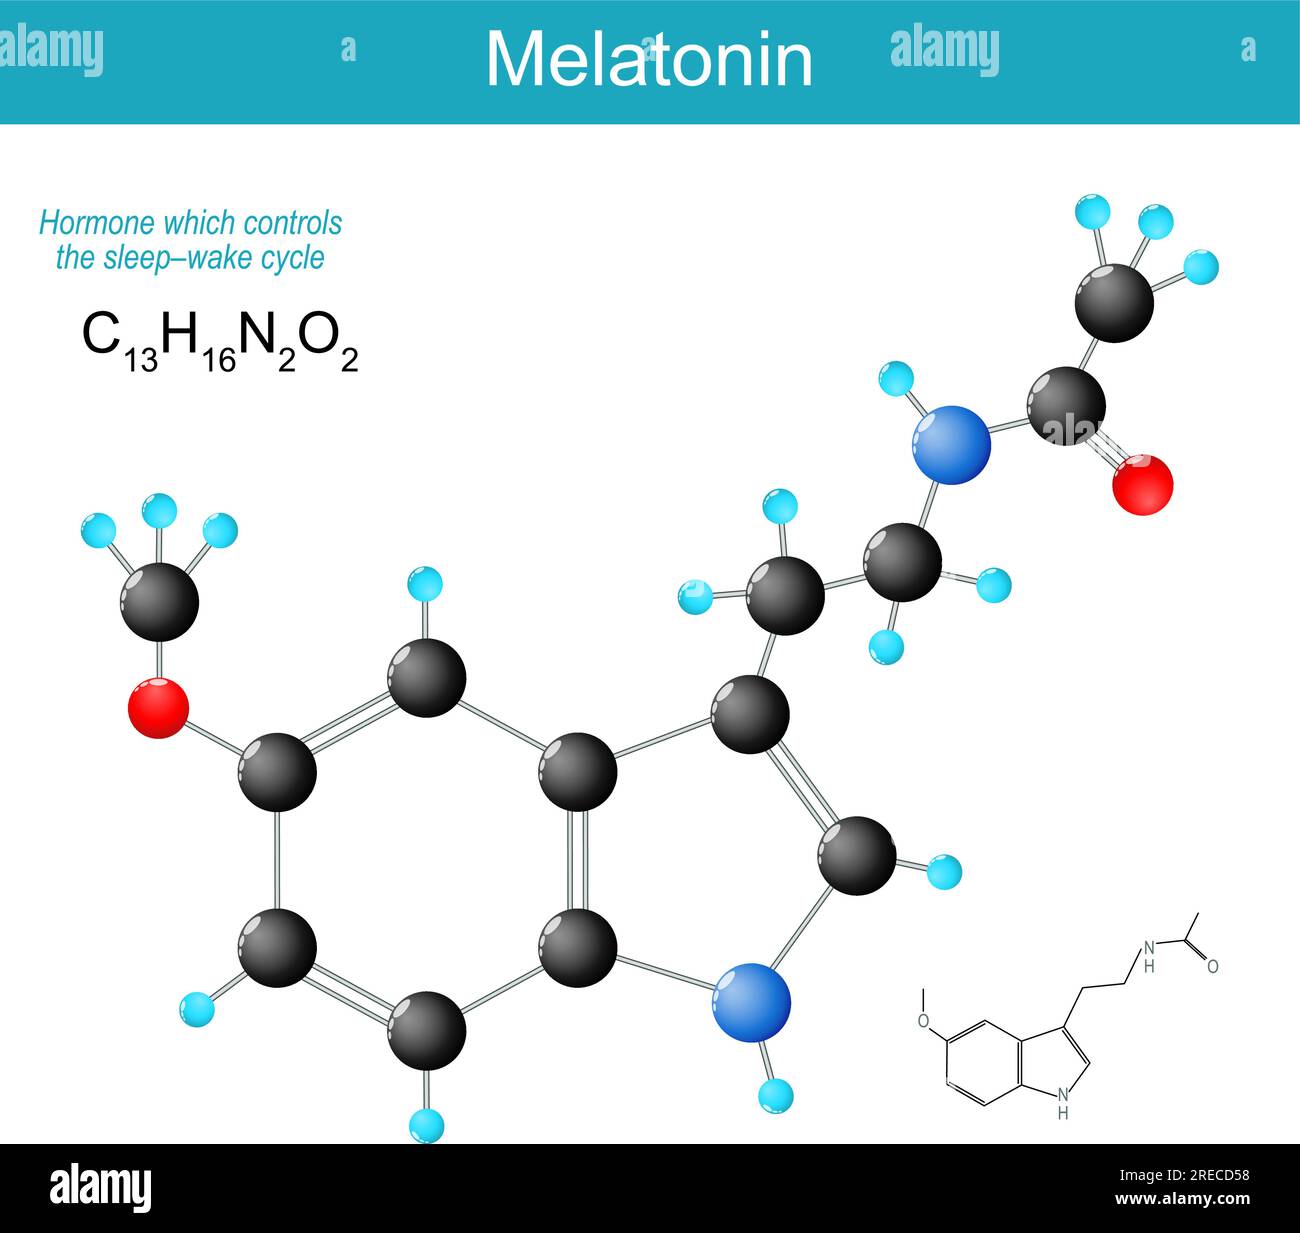 Molécule de mélatonine. formule structurale chimique moléculaire et modèle de l'hormone libérée dans le cerveau la nuit qui contrôle le cycle sommeil-éveil Illustration de Vecteur